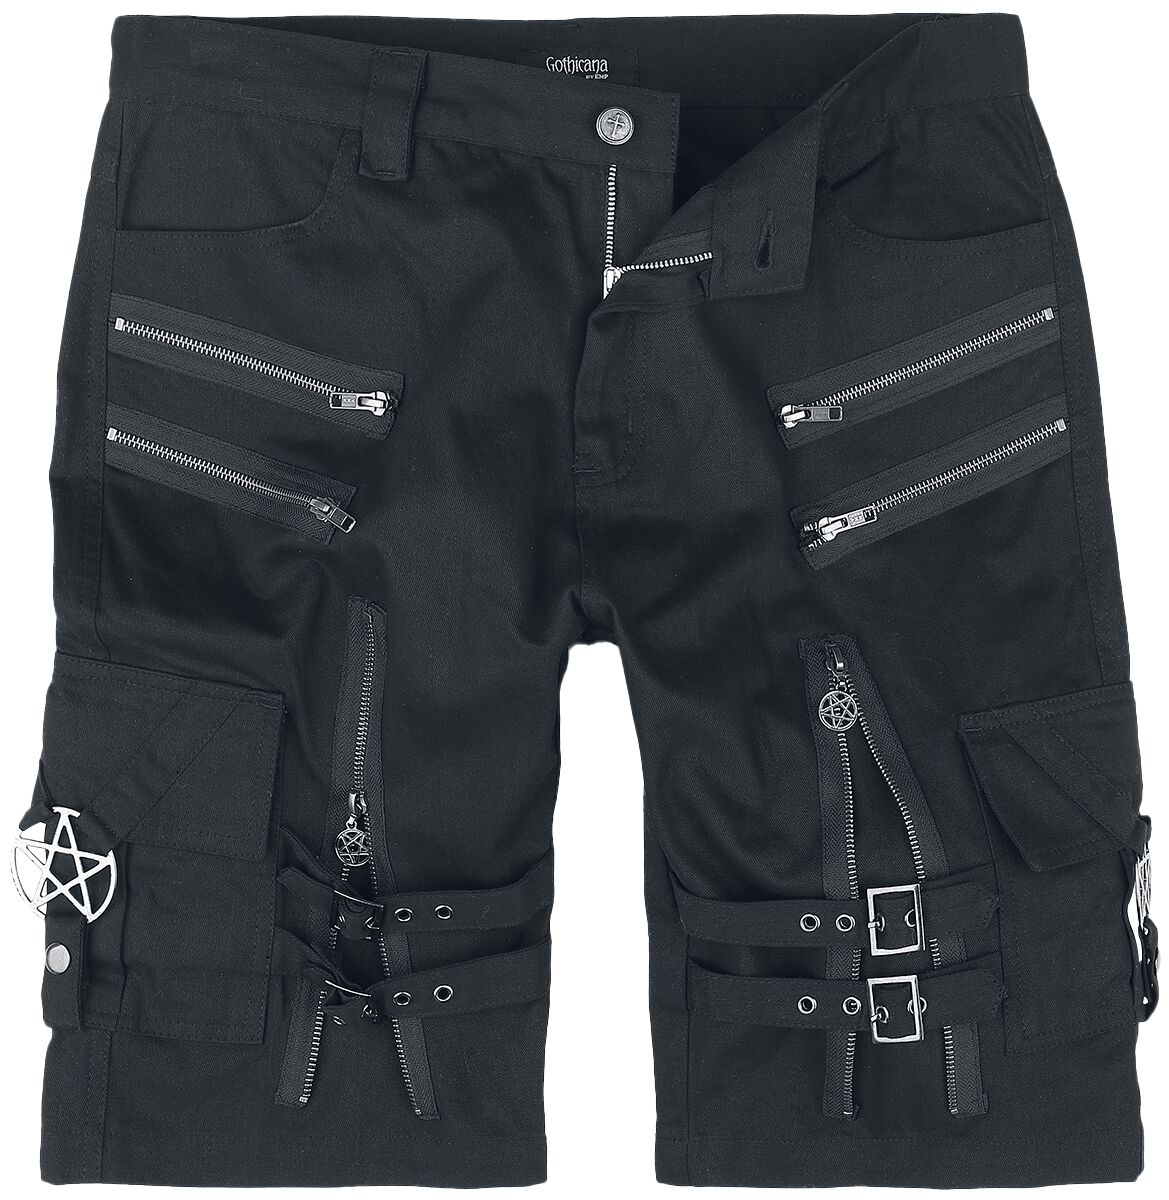 Gothicana by EMP - Gothic Short - Shorts with straps, buckles and zipper - S bis XXL - für Männer - Größe S - schwarz